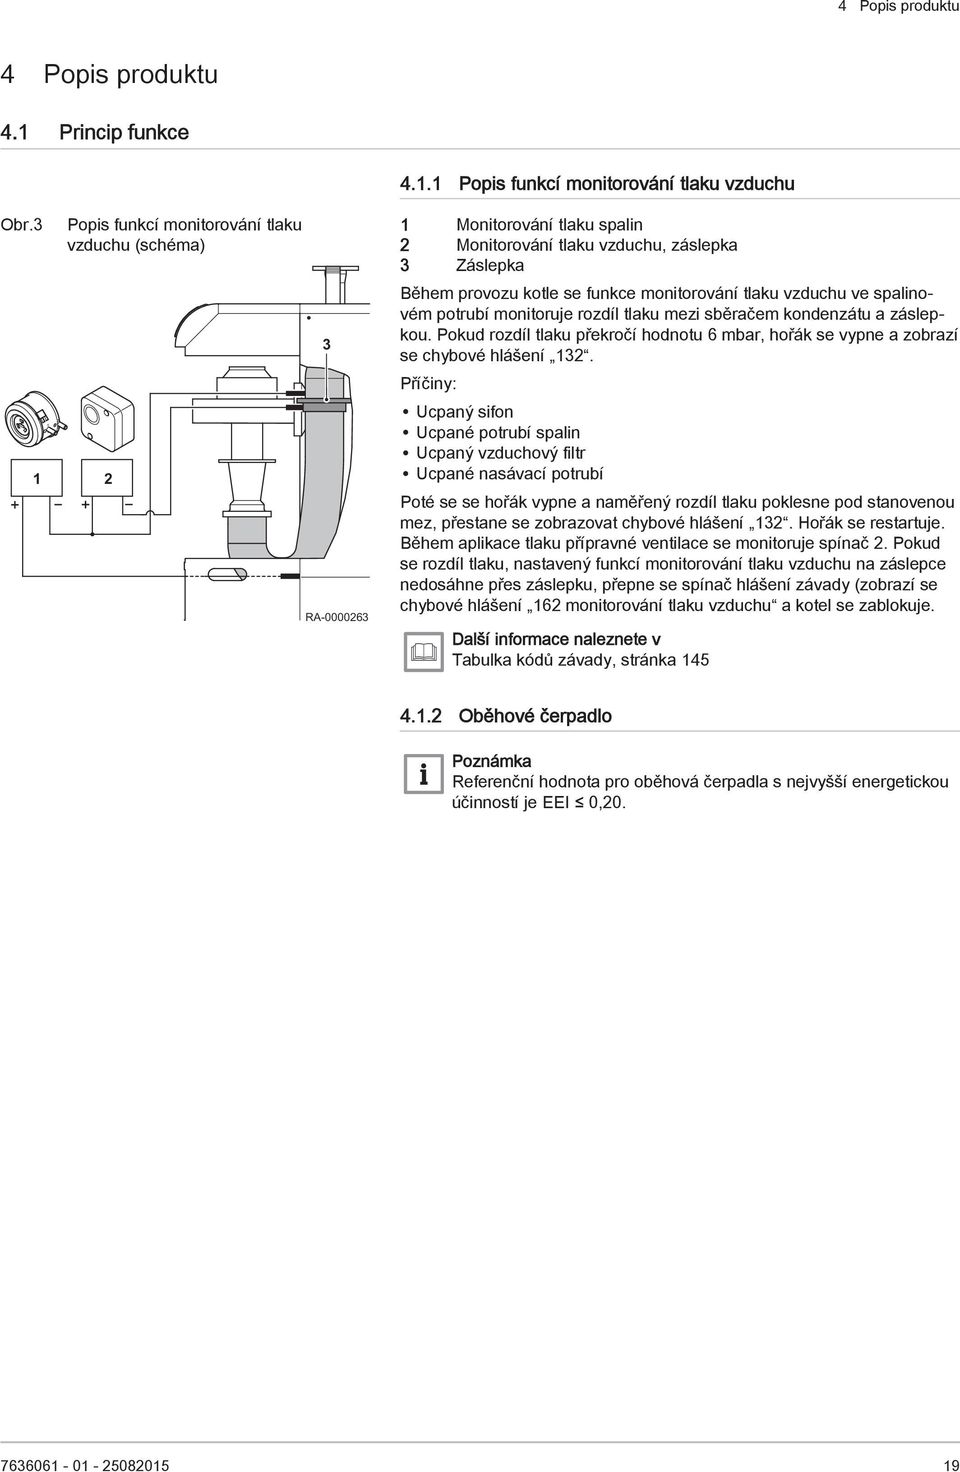 vzduchu ve spalinovém potrubí monitoruje rozdíl tlaku mezi sběračem kondenzátu a záslepkou. Pokud rozdíl tlaku překročí hodnotu 6 mbar, hořák se vypne a zobrazí se chybové hlášení 132.